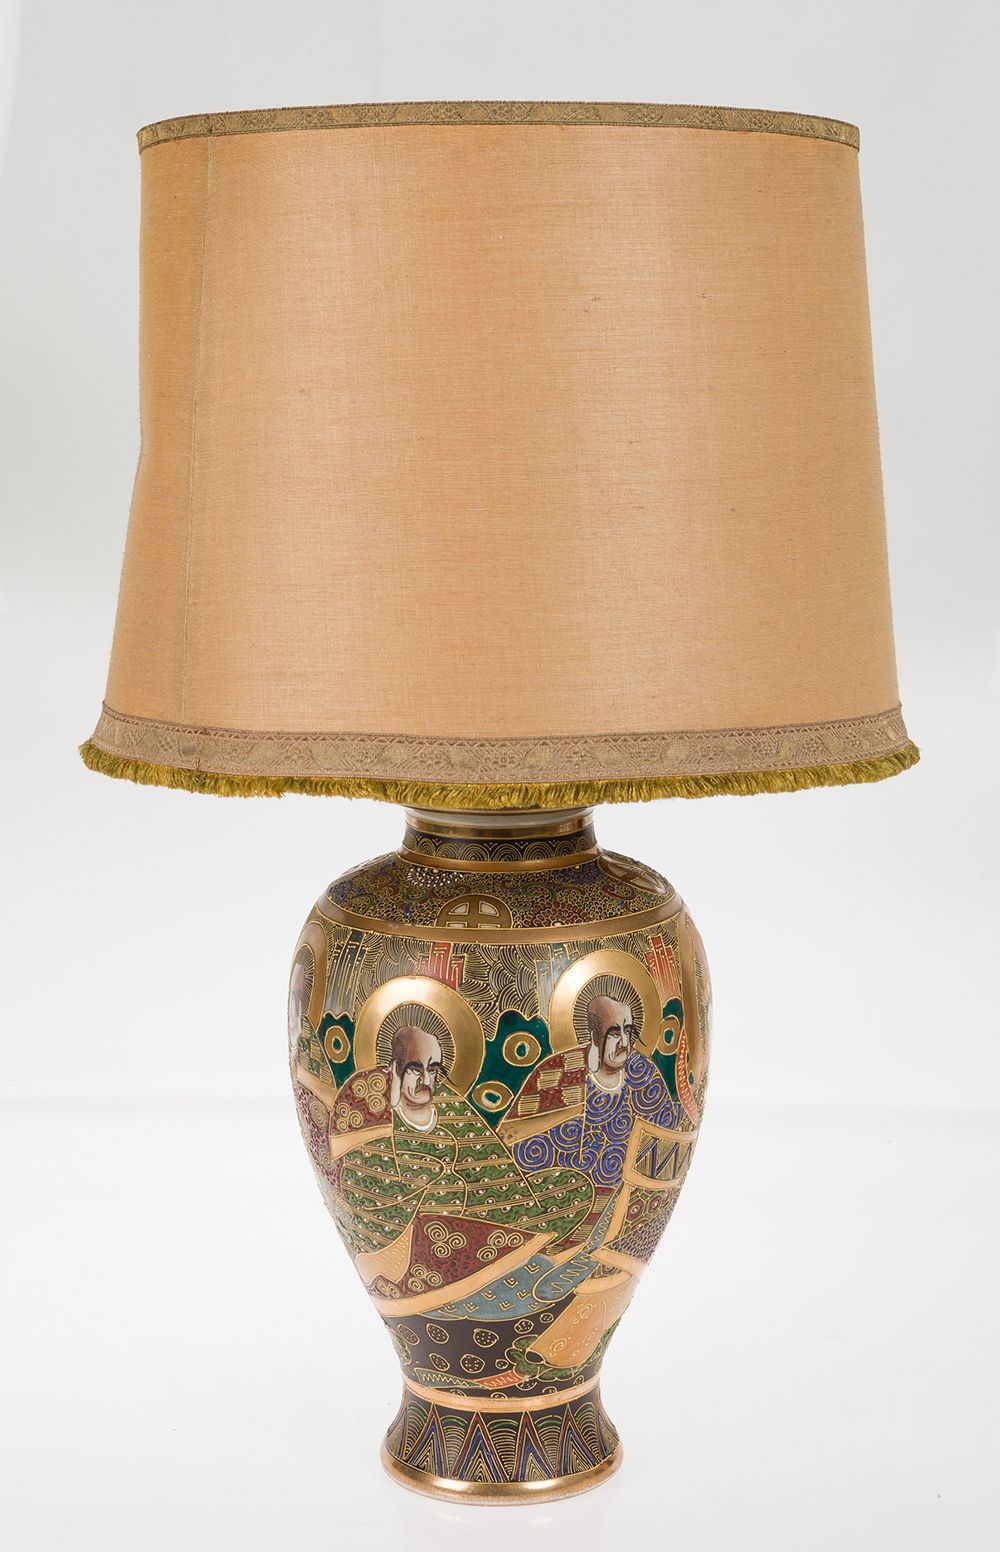 Satsuma table lamp 搪瓷花瓶形式的台灯，仿照萨摩模式。底座上有标记。 不带灯罩的高度：37厘米。瓷器